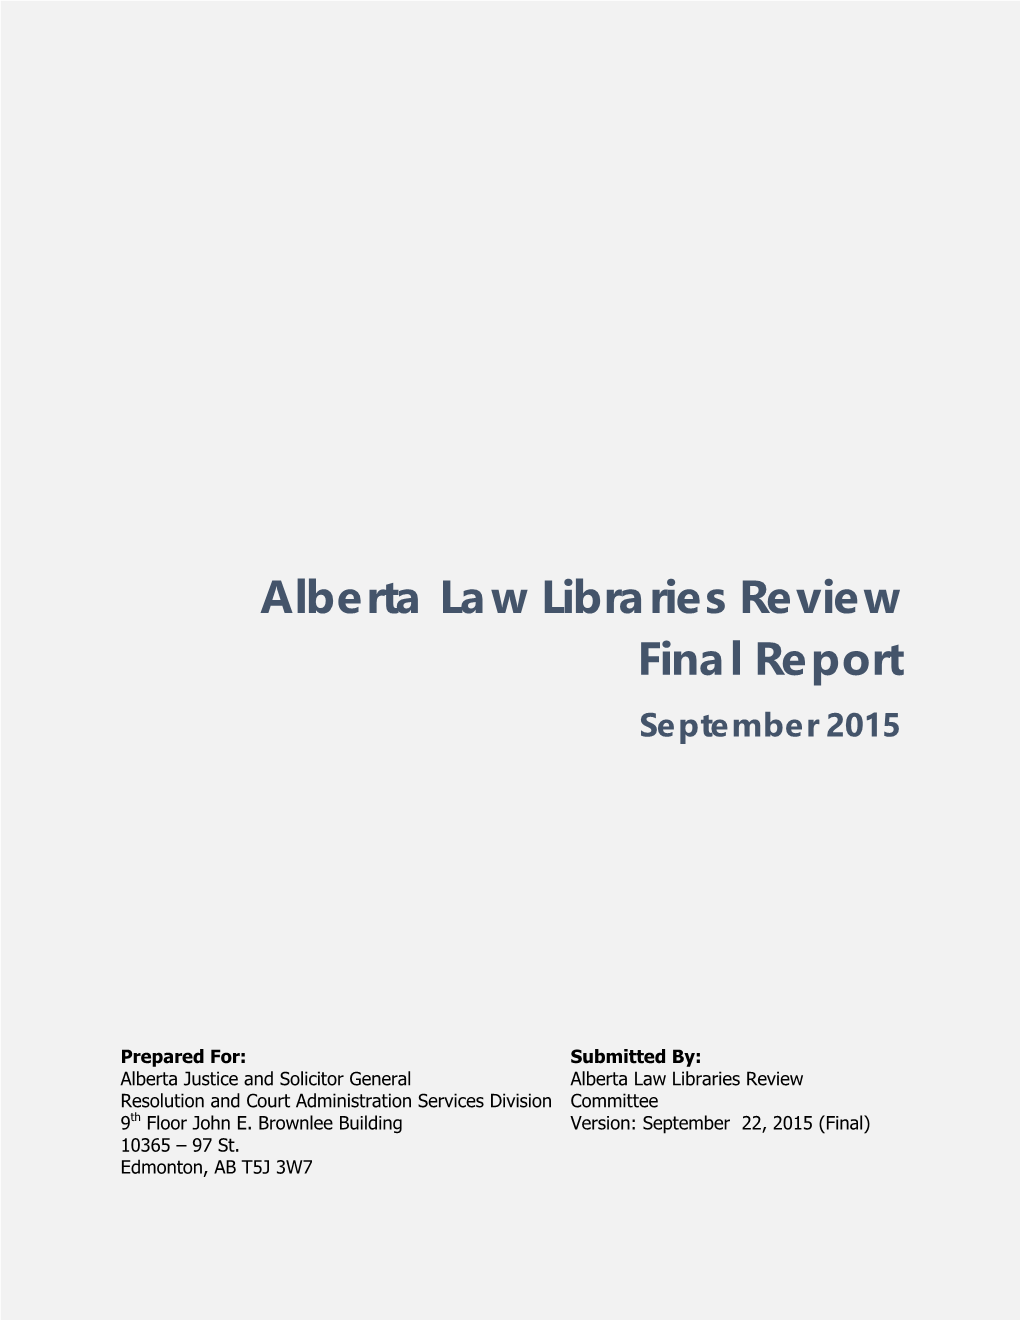 Alberta Law Libraries Review Final Report September 2015